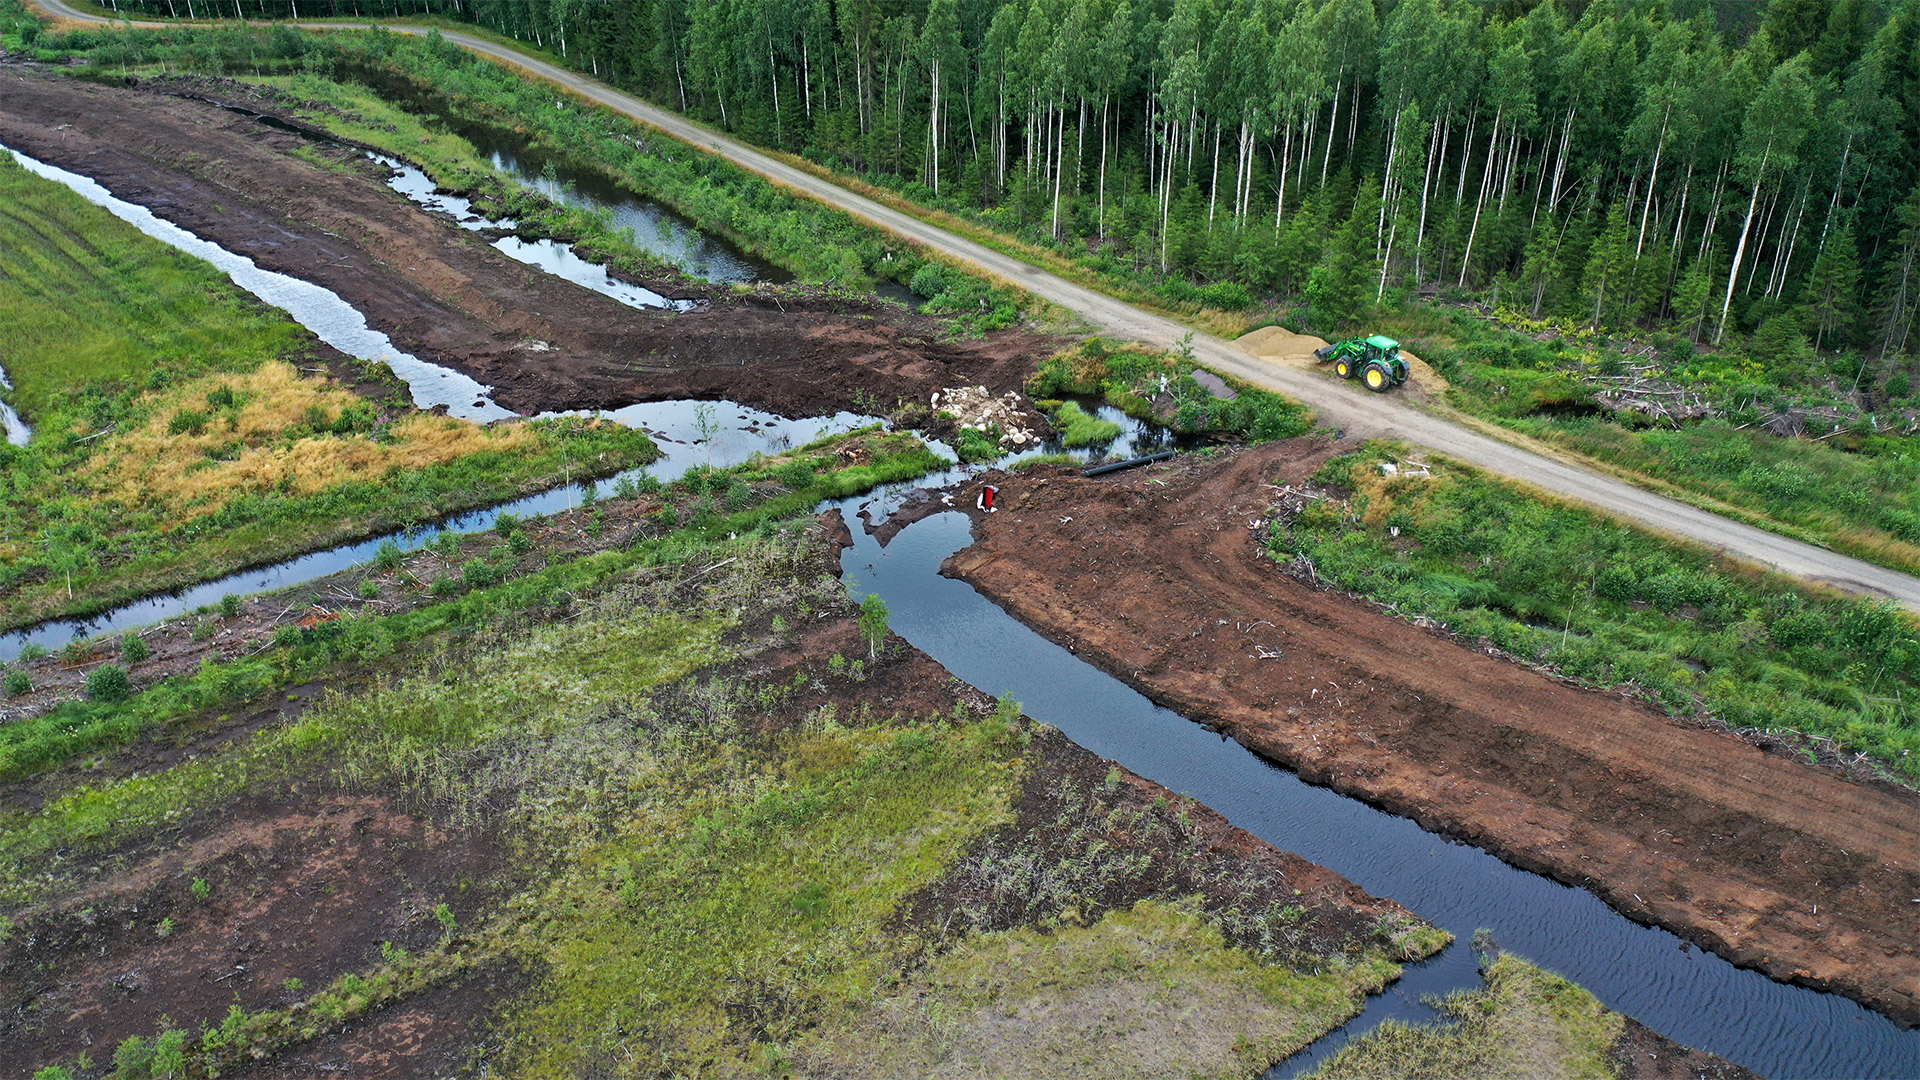 Ett flygfoto av ett landskap med spår efter jordbearbetning, fåror fyllda med vatten och några rör. På sidan syns en väg och en traktor på vägen..